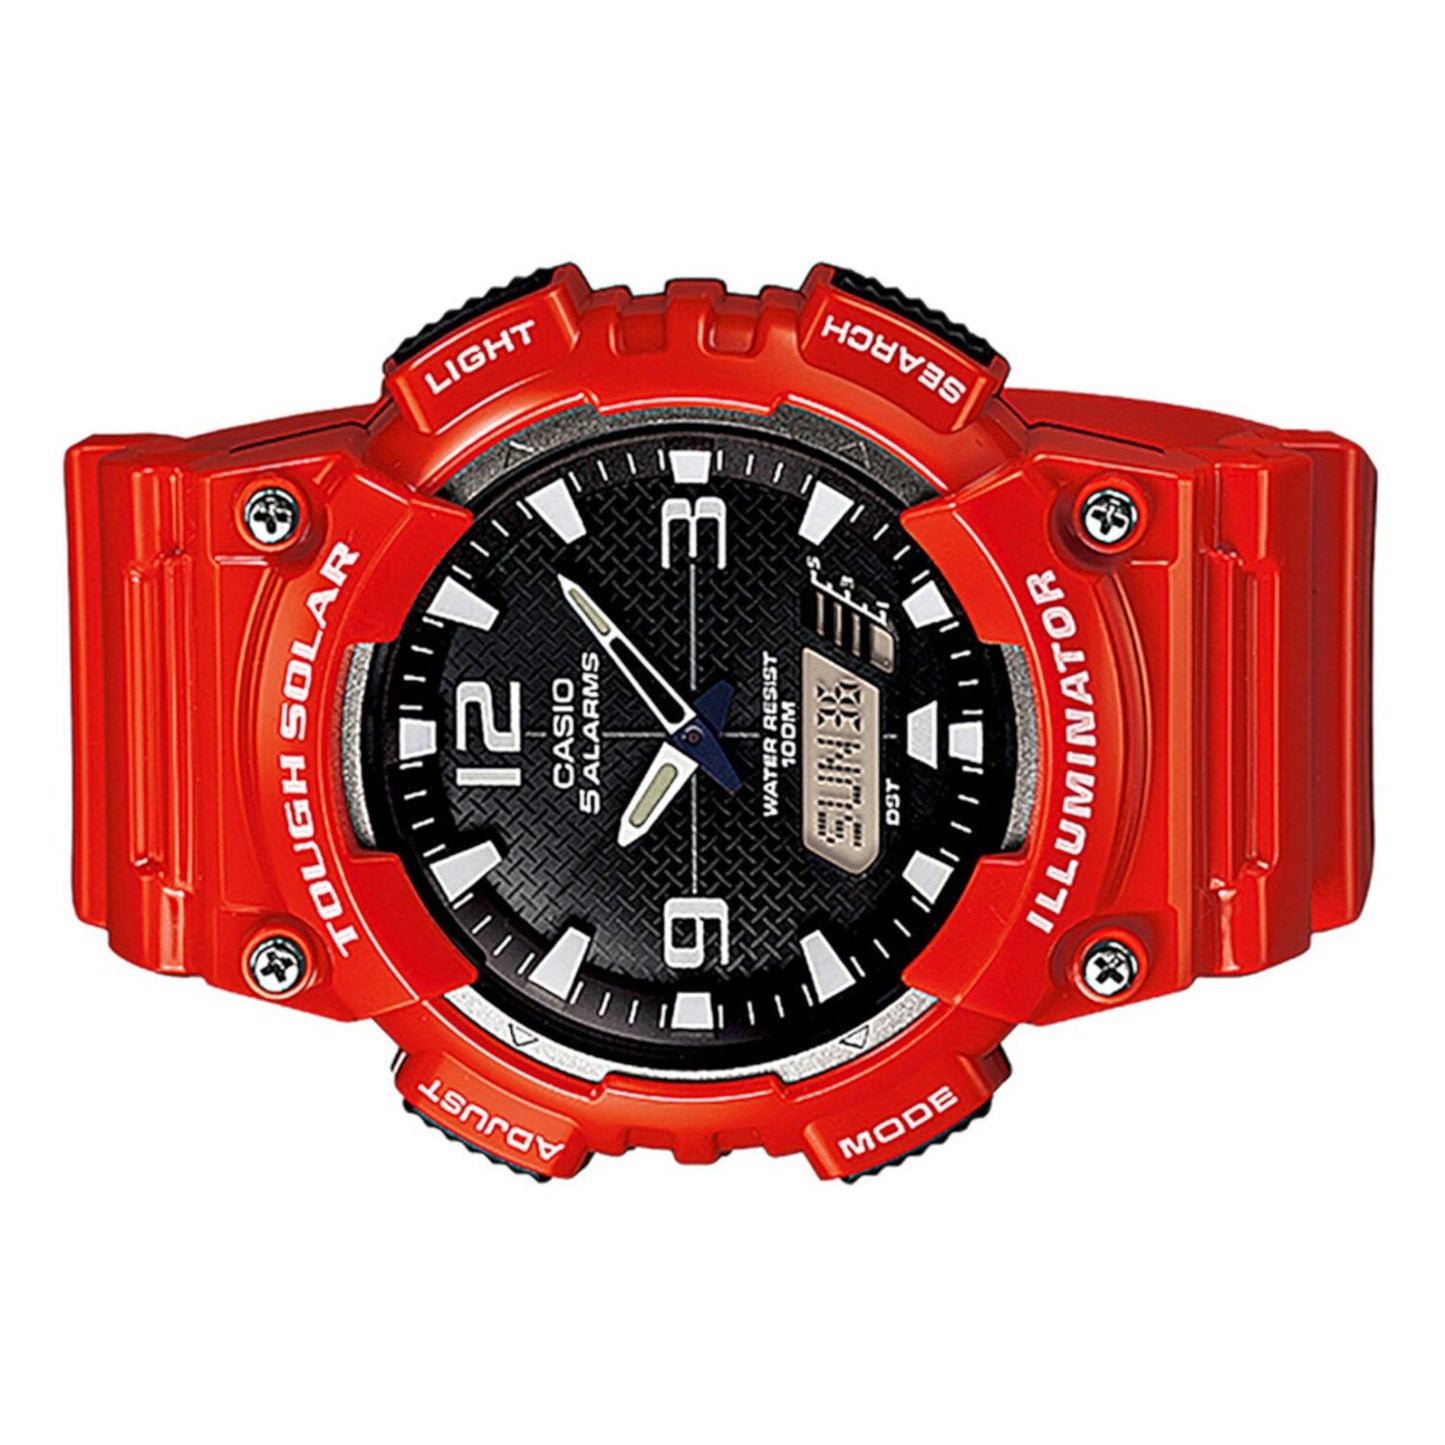 Reloj Casio AQ-S810WC-4AVCF Tough Solar World Time-Rojo